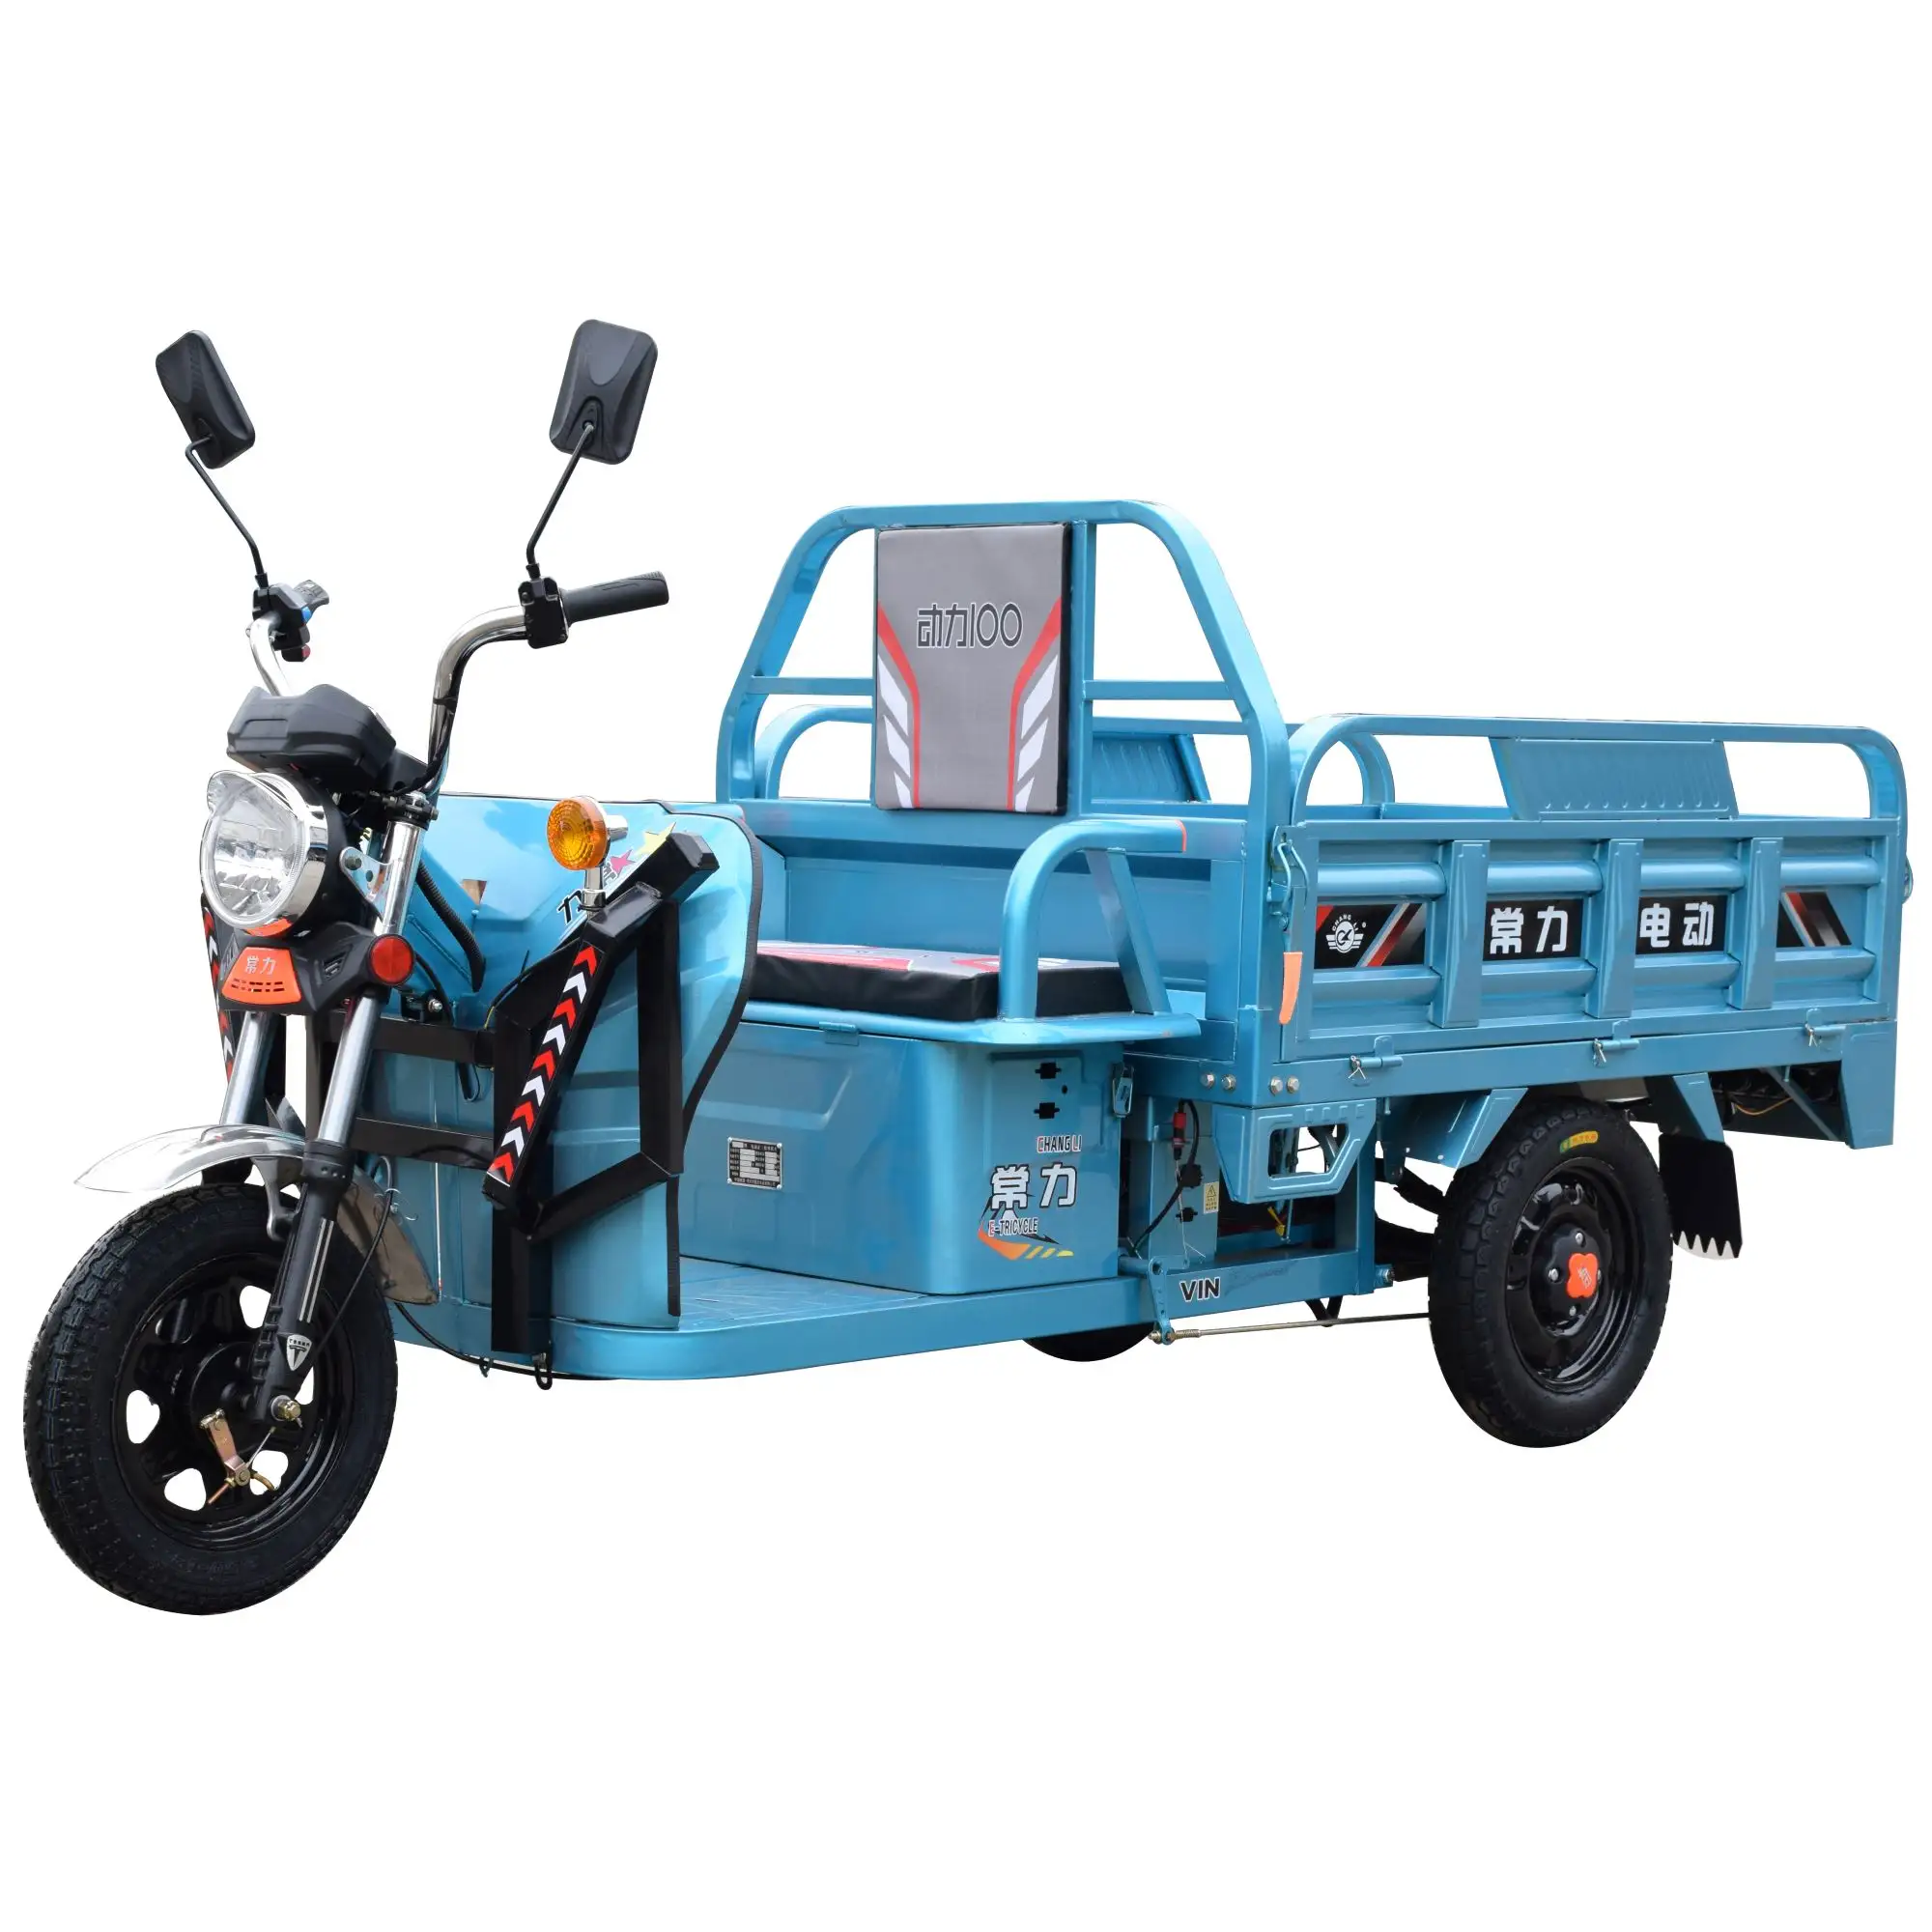 Triciclo eléctrico para adultos con caja de carga abierta, 800W/1000W, 60V, tres ruedas, fabricado en china